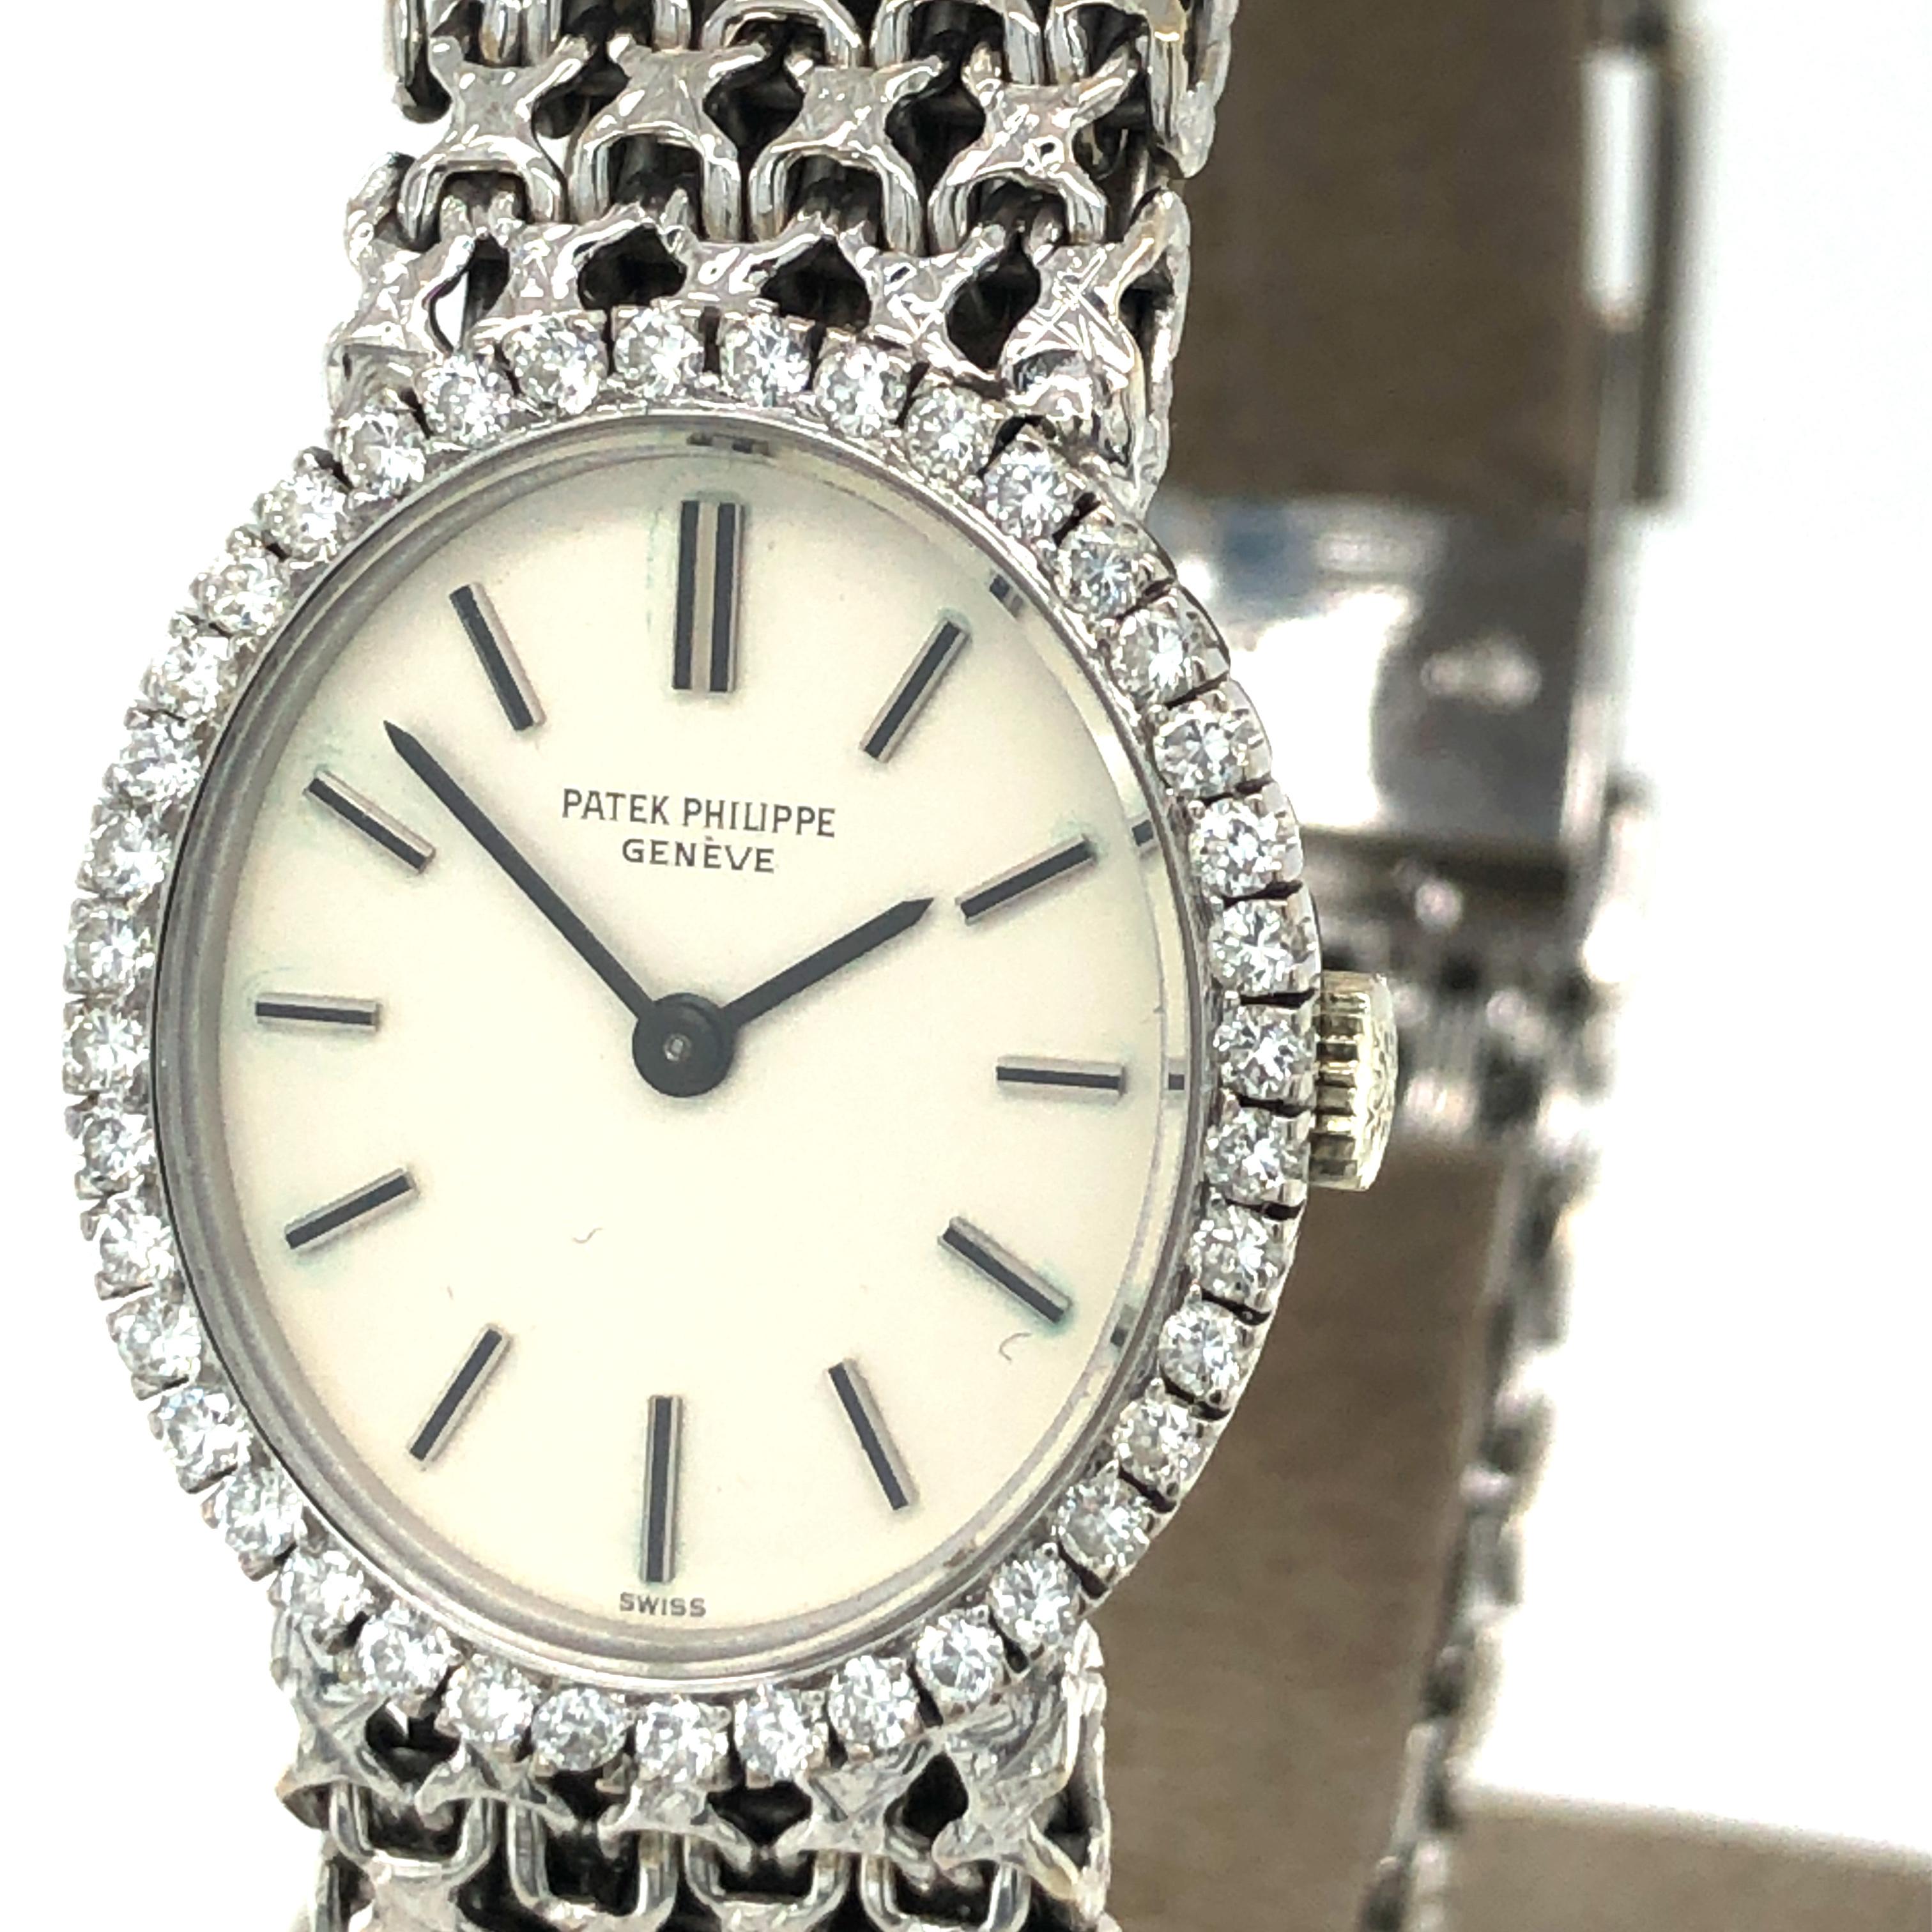 Brilliant Cut Patek Philippe Golden Ellipse Vintage Lady's Diamond Bracelet Watch, Ref. 4178